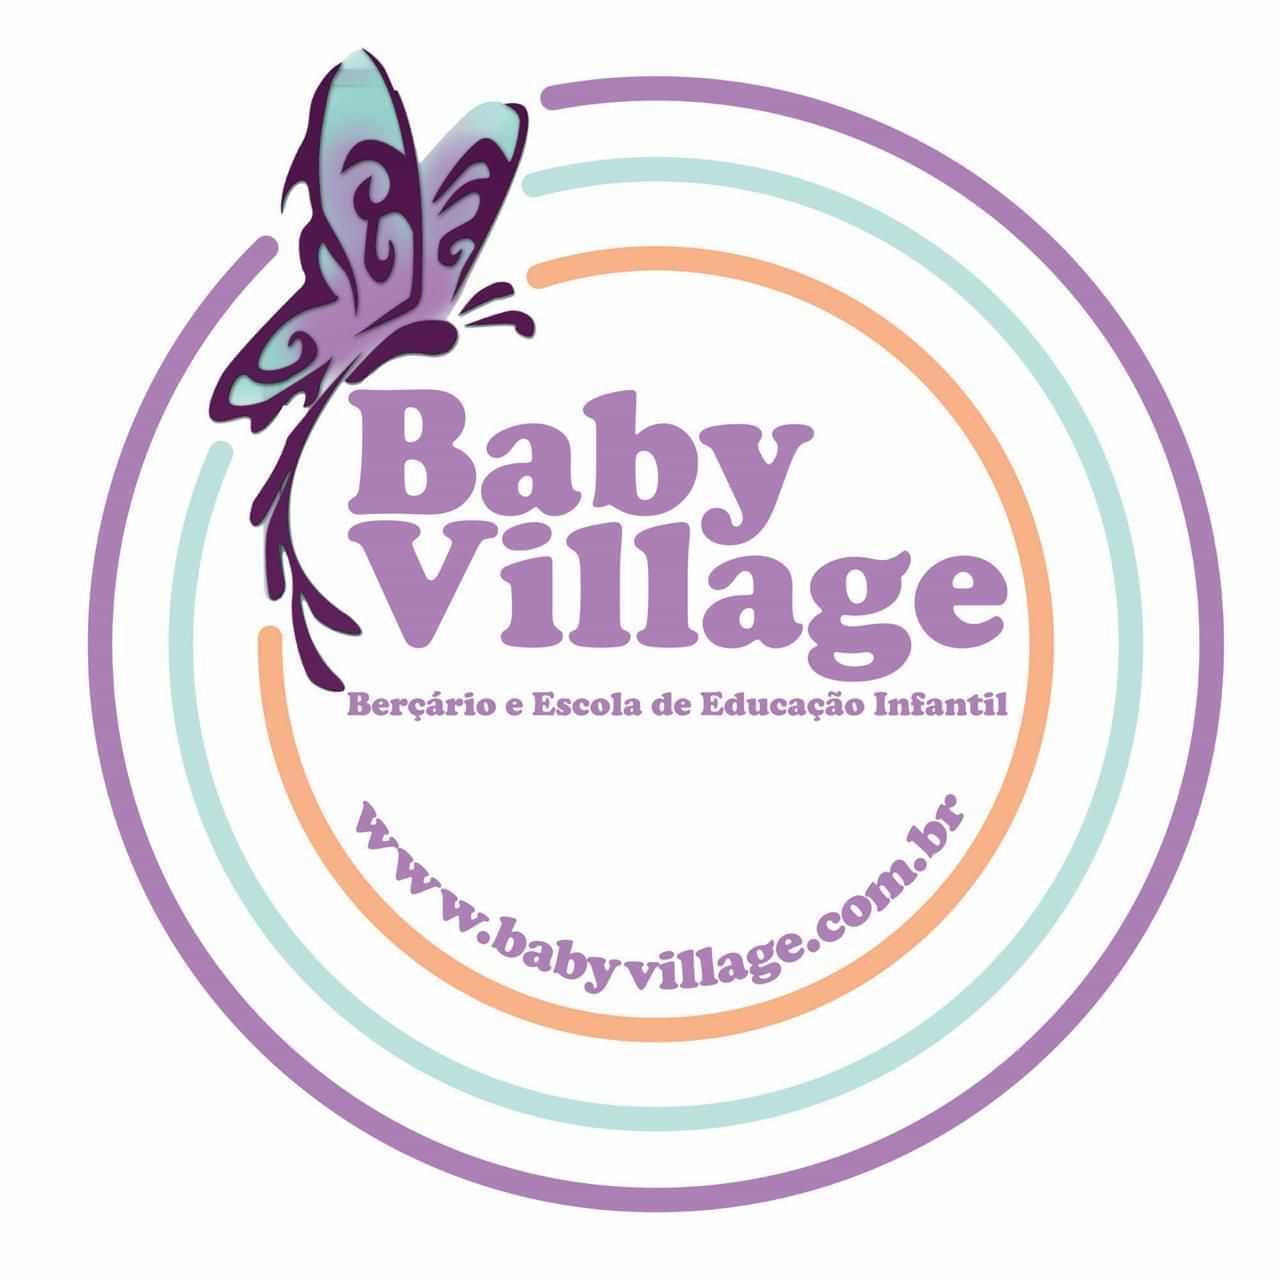 Baby village